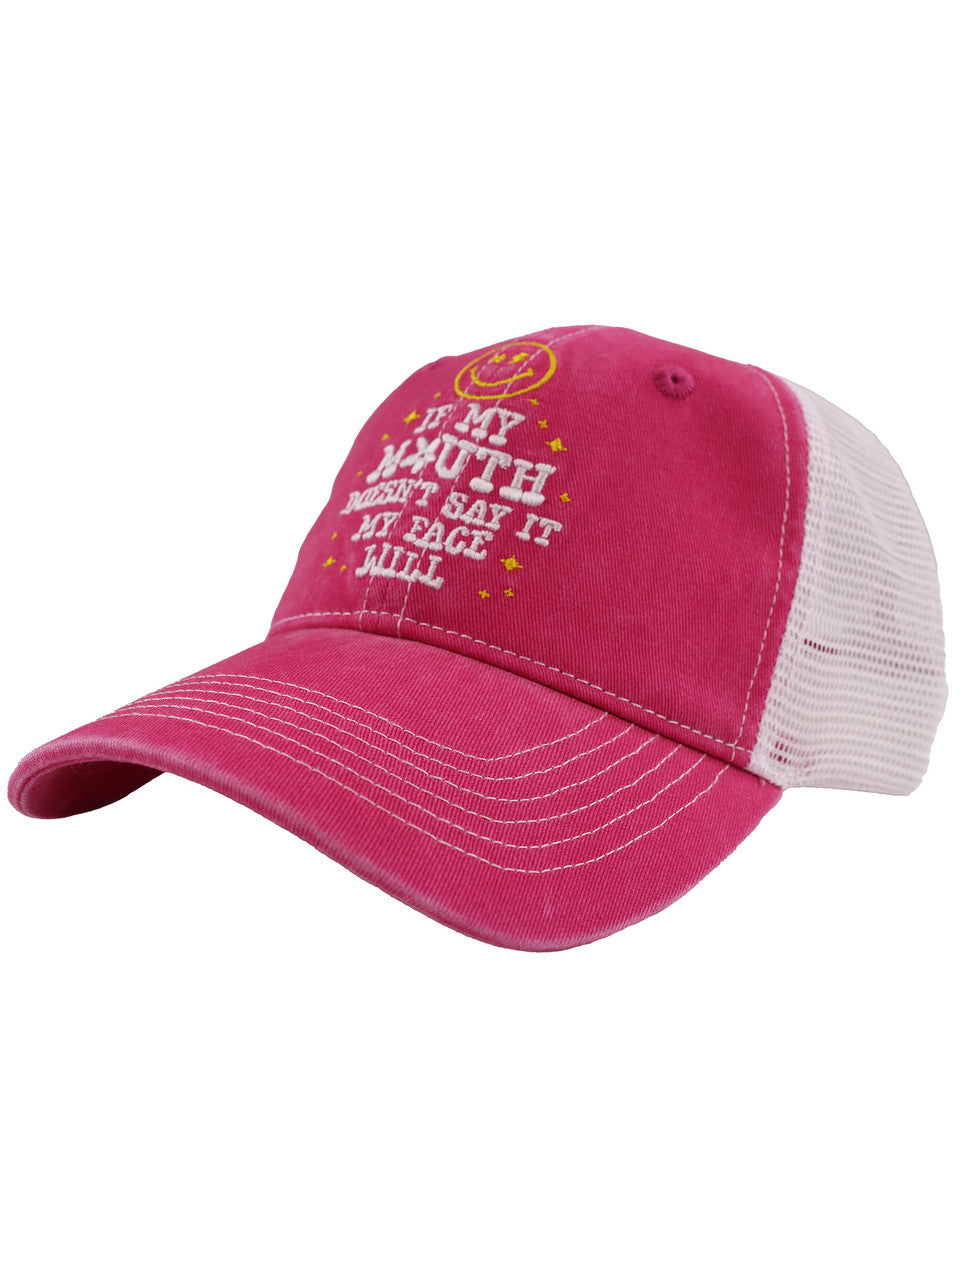 WOMEN'S HAT (0124)